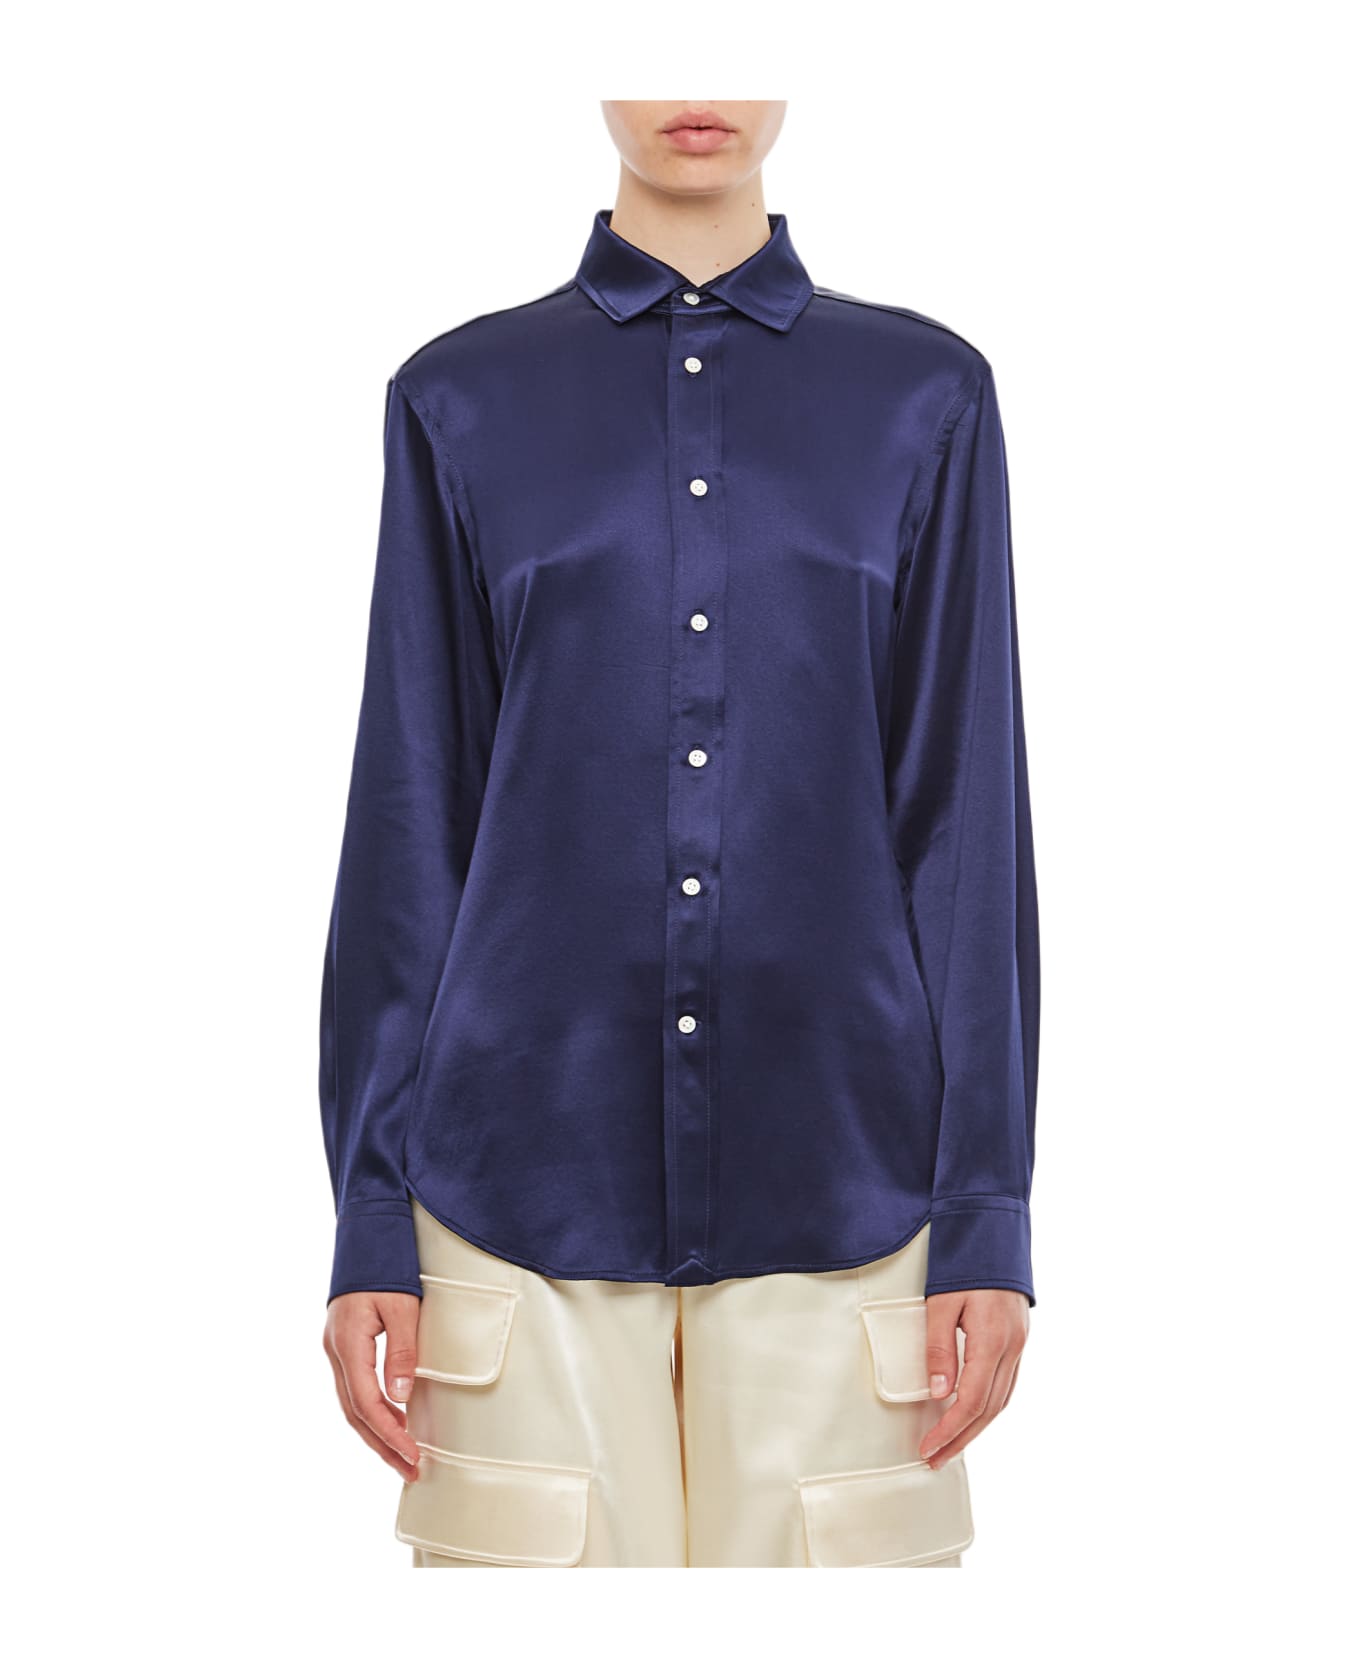 Polo Ralph Lauren Long Sleeve Button Front Silk Shirt - Newport Navy